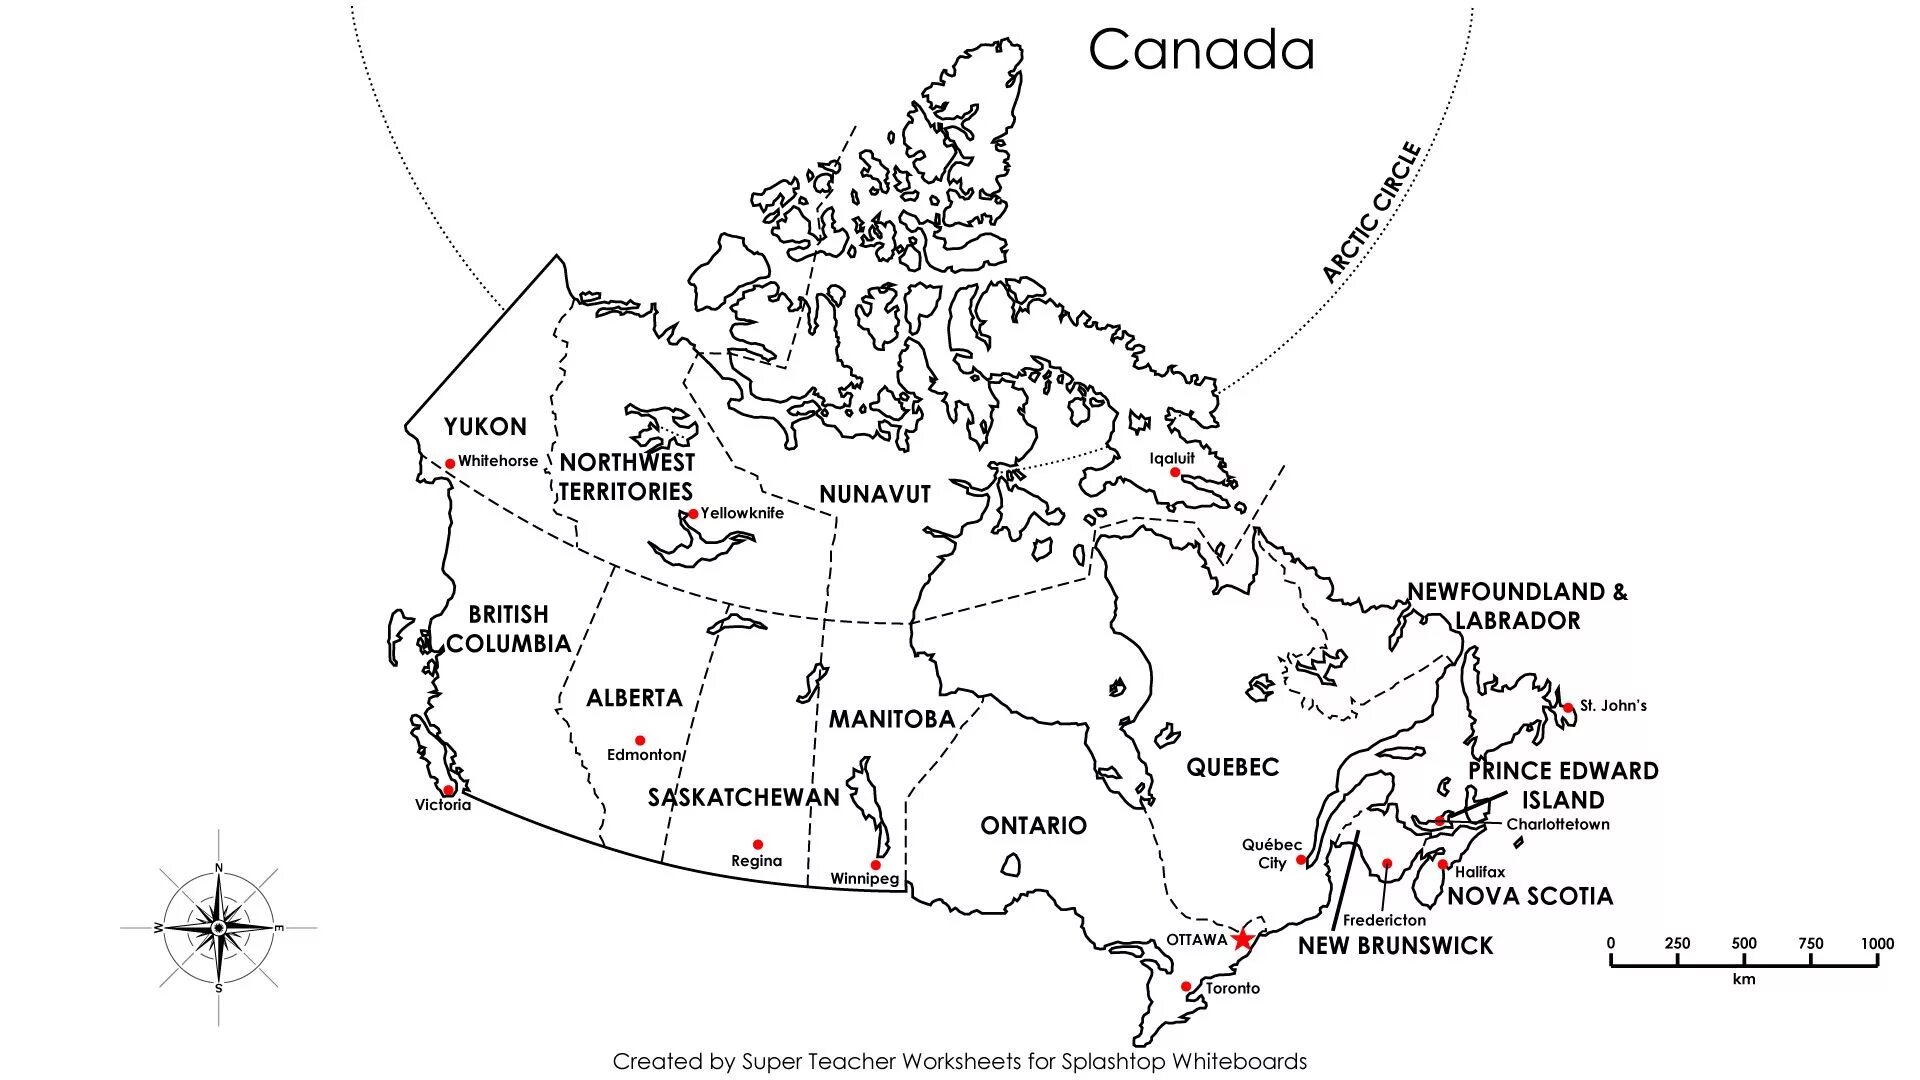 Национальные парки на контурной карте. Канада политическая карта контурная. Контурная карта по Канаде на английском. Контурная карта территории и провинции Канады. Население Канады контурная карта.